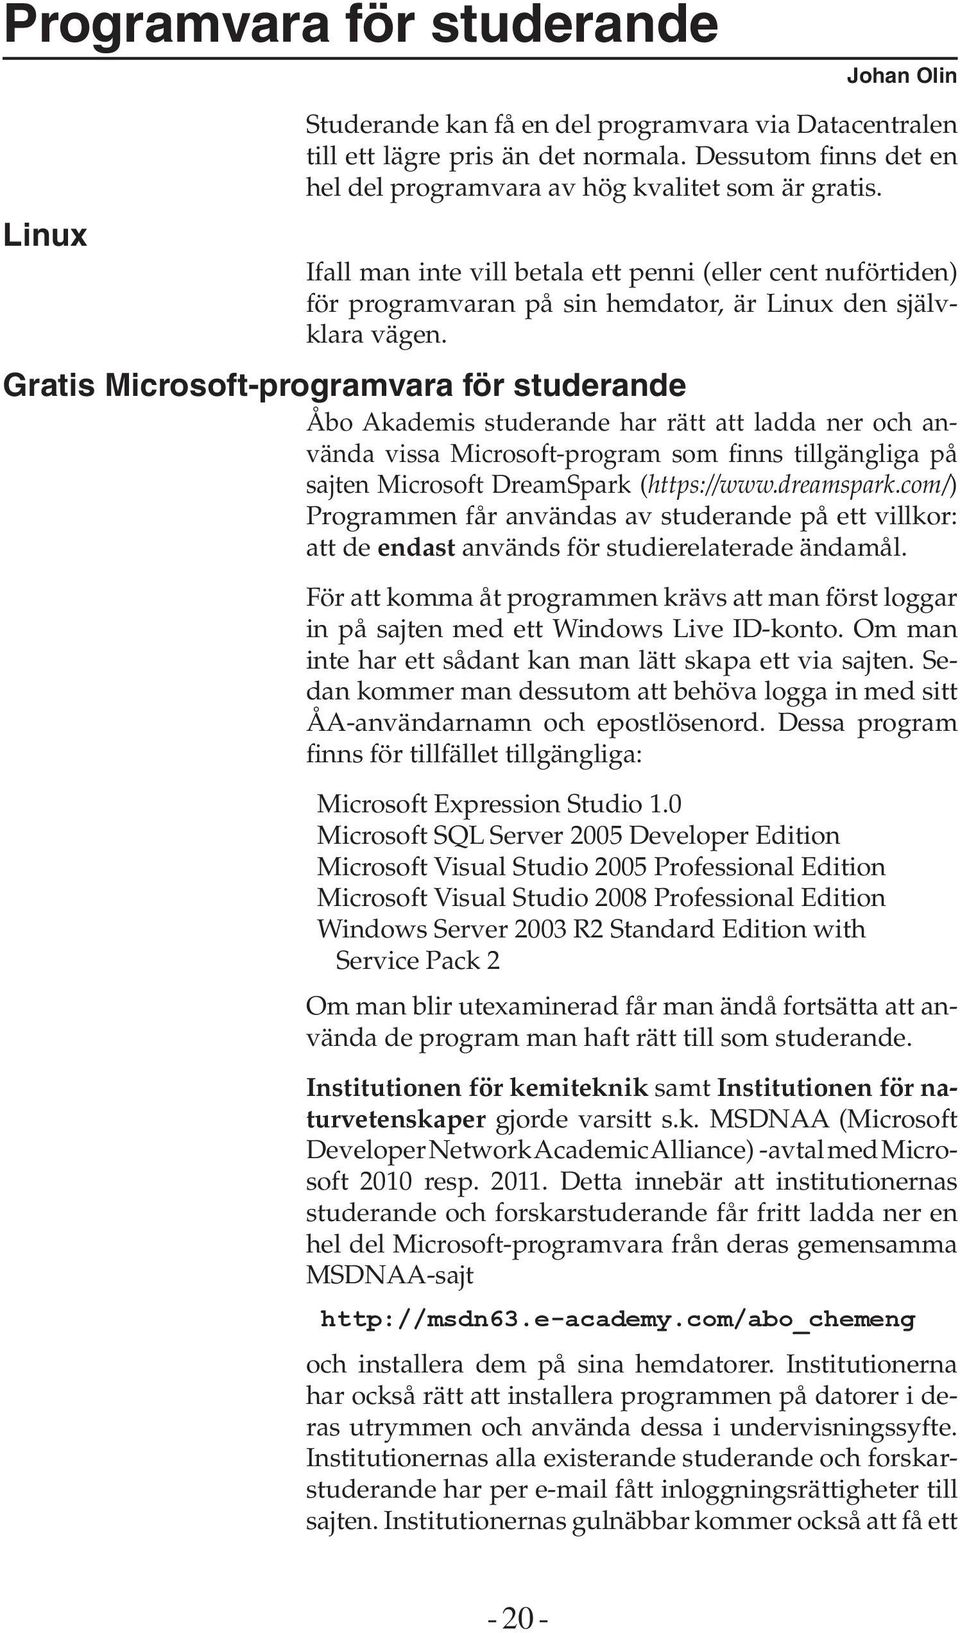 Gratis Microsoft-programvara för studerande Åbo Akademis studerande har rätt att ladda ner och använda vissa Microsoft-program som finns tillgängliga på sajten Microsoft DreamSpark (https://www.